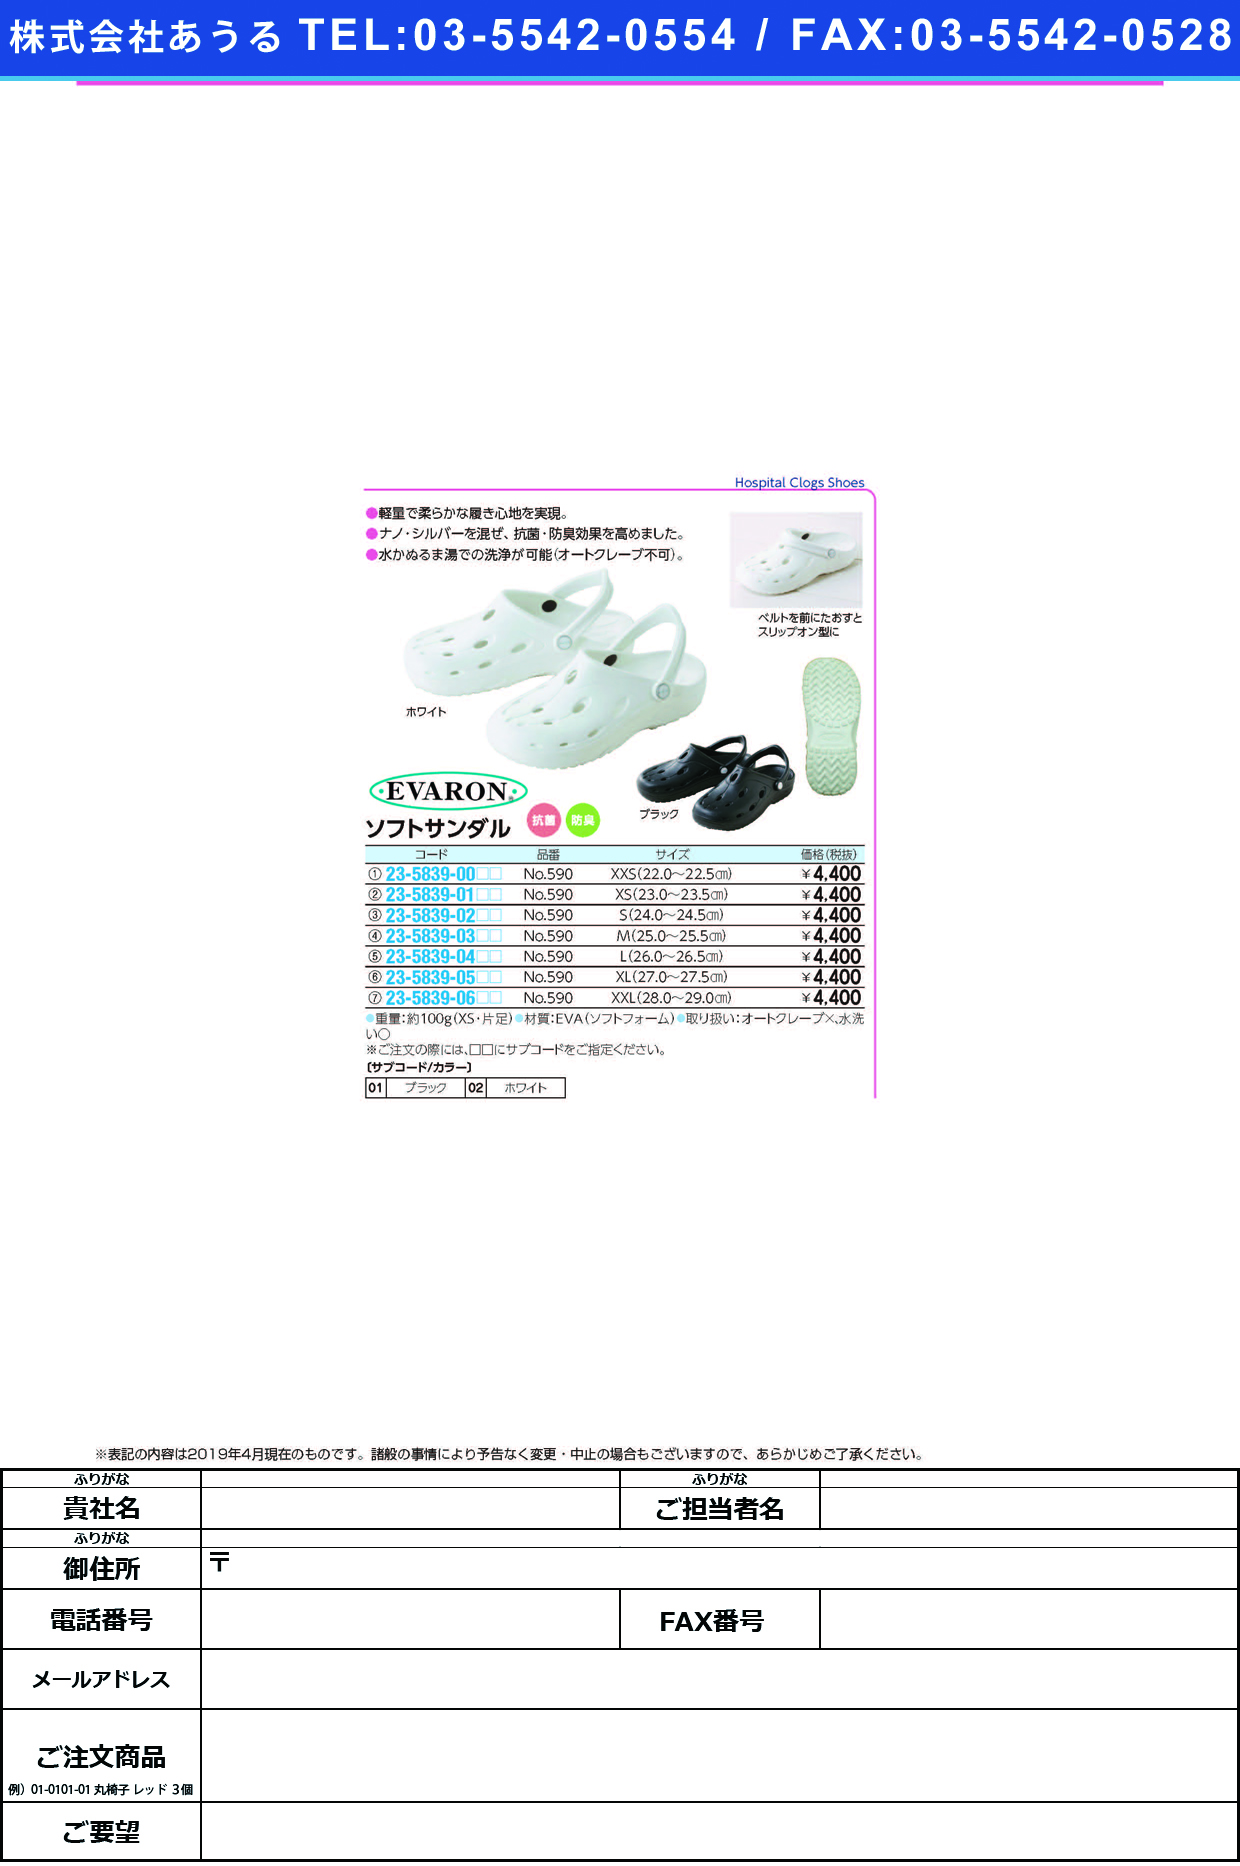 (23-5839-05)ソフトサンダル NO.590(XL/27-27.5CM) ｿﾌﾄｻﾝﾀﾞﾙ ホワイト【1足単位】【2019年カタログ商品】